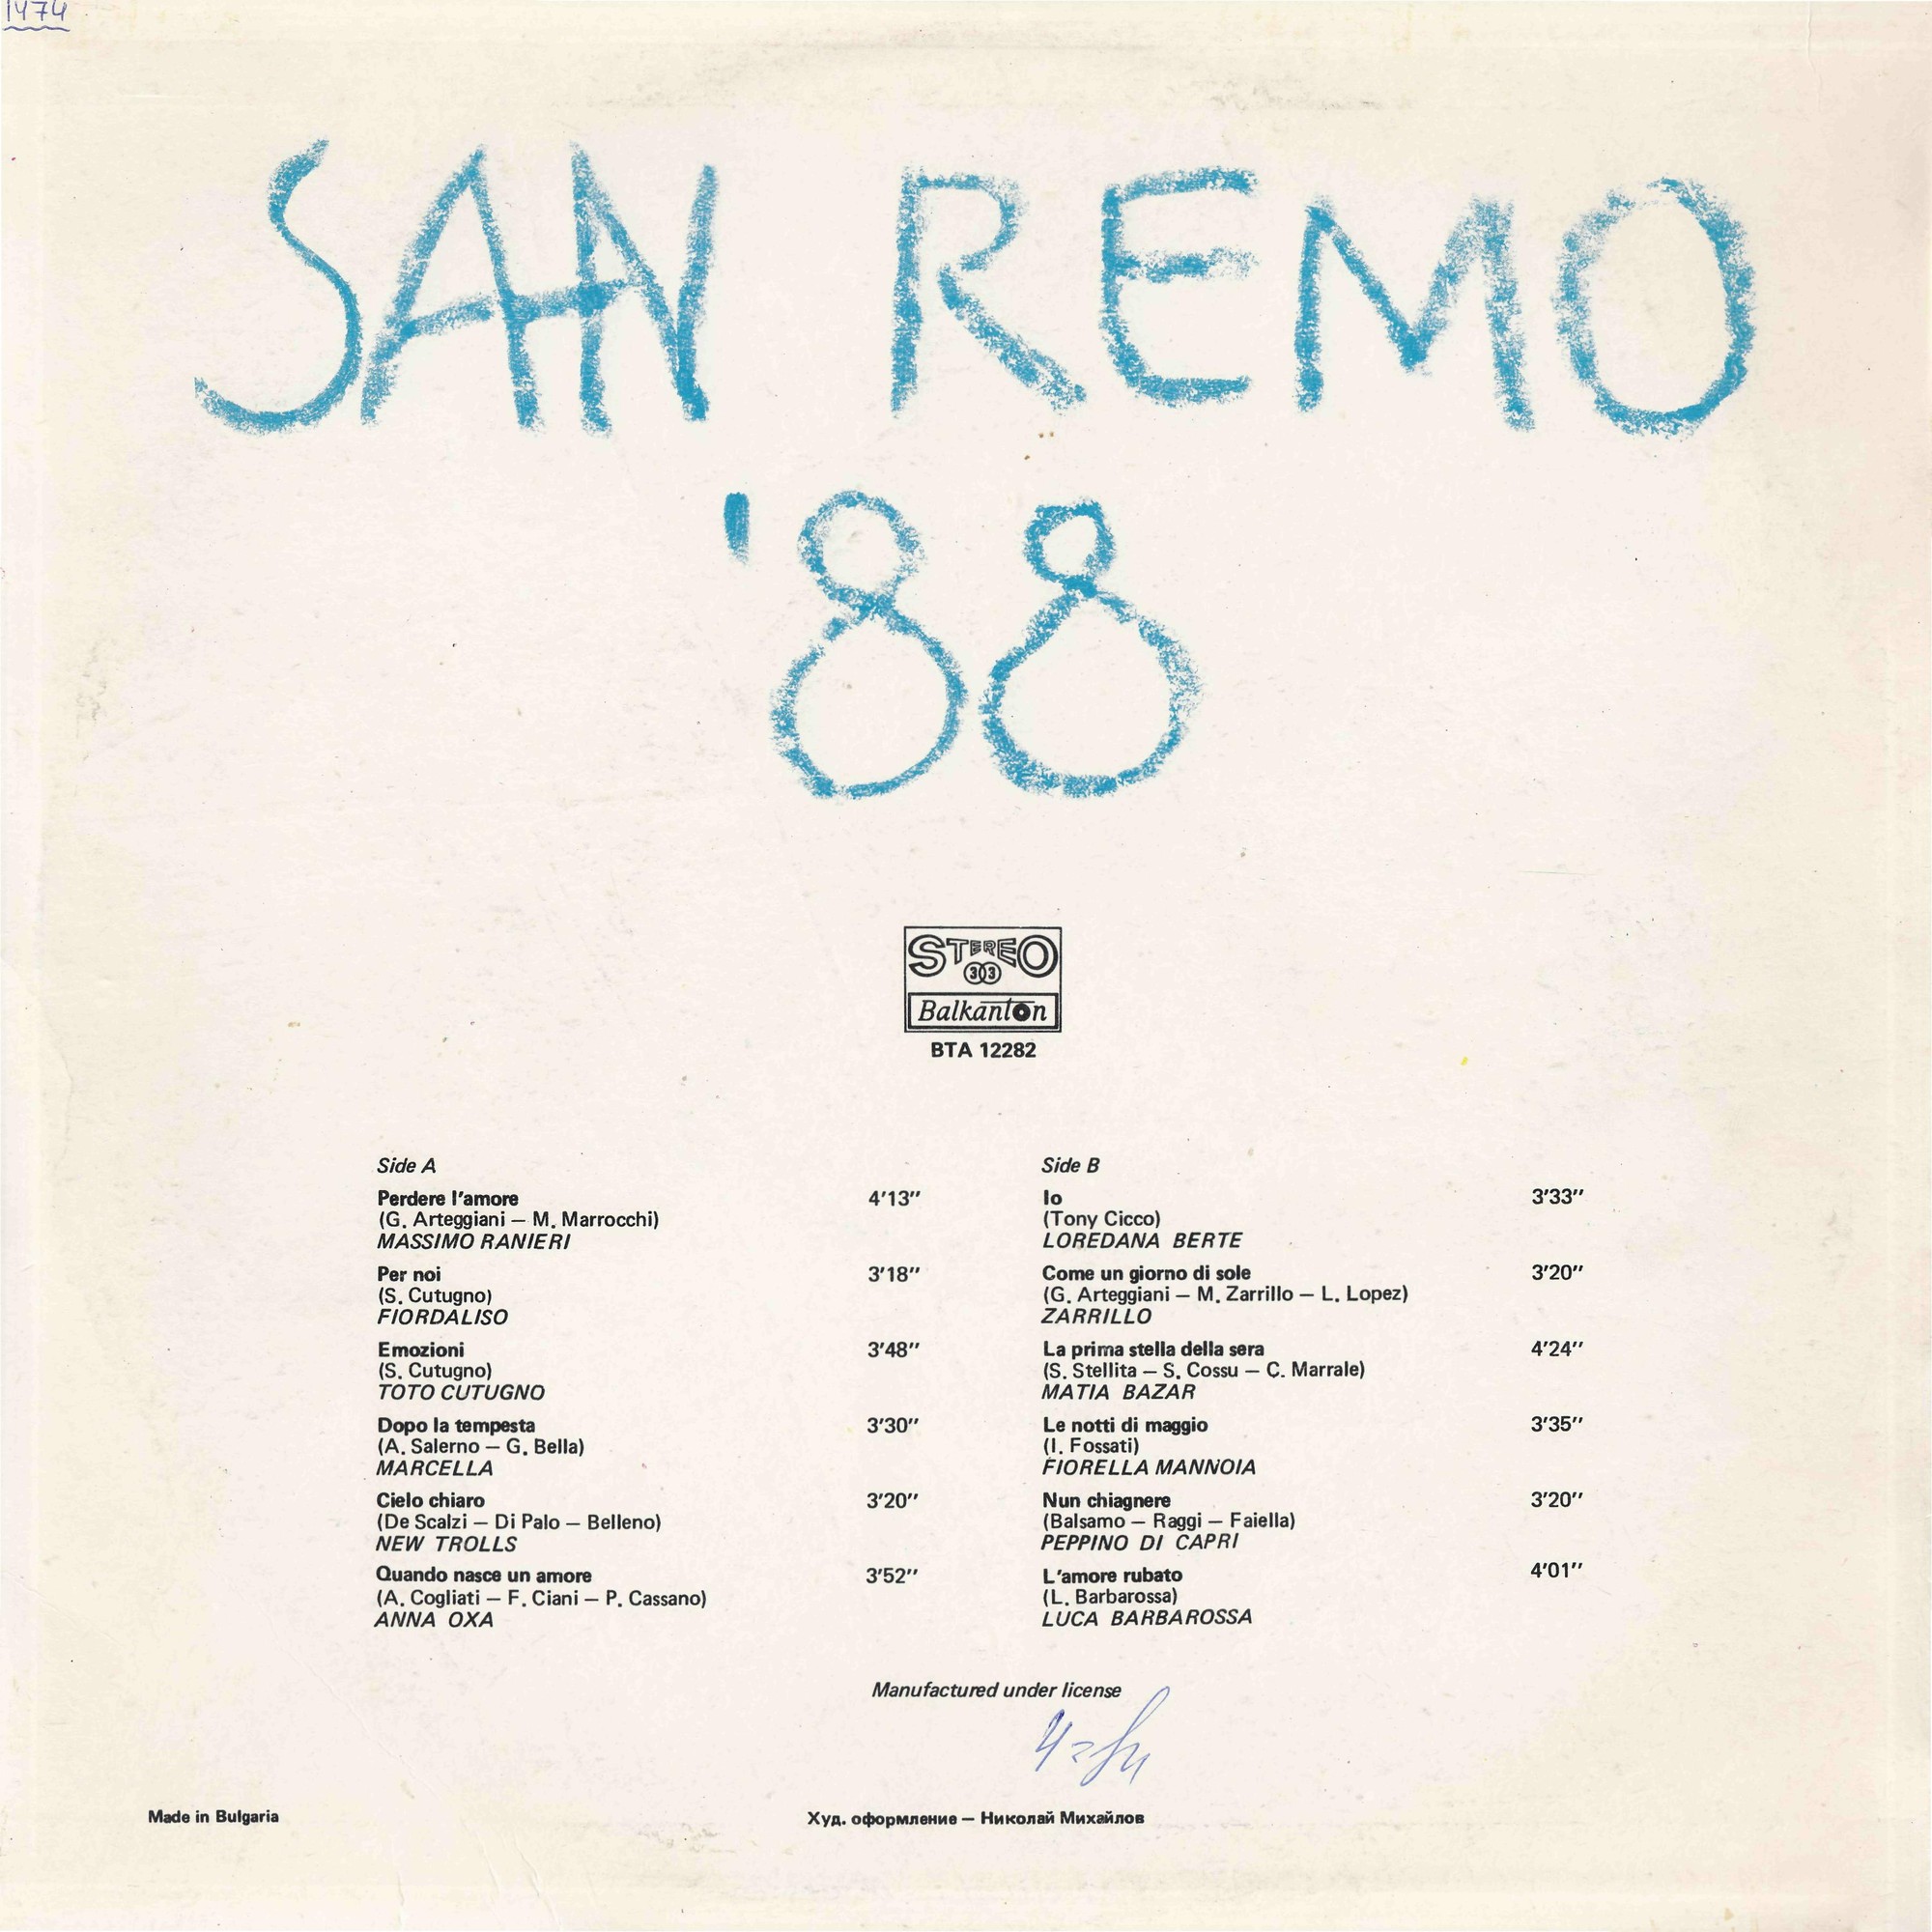 Сан Ремо ‘88